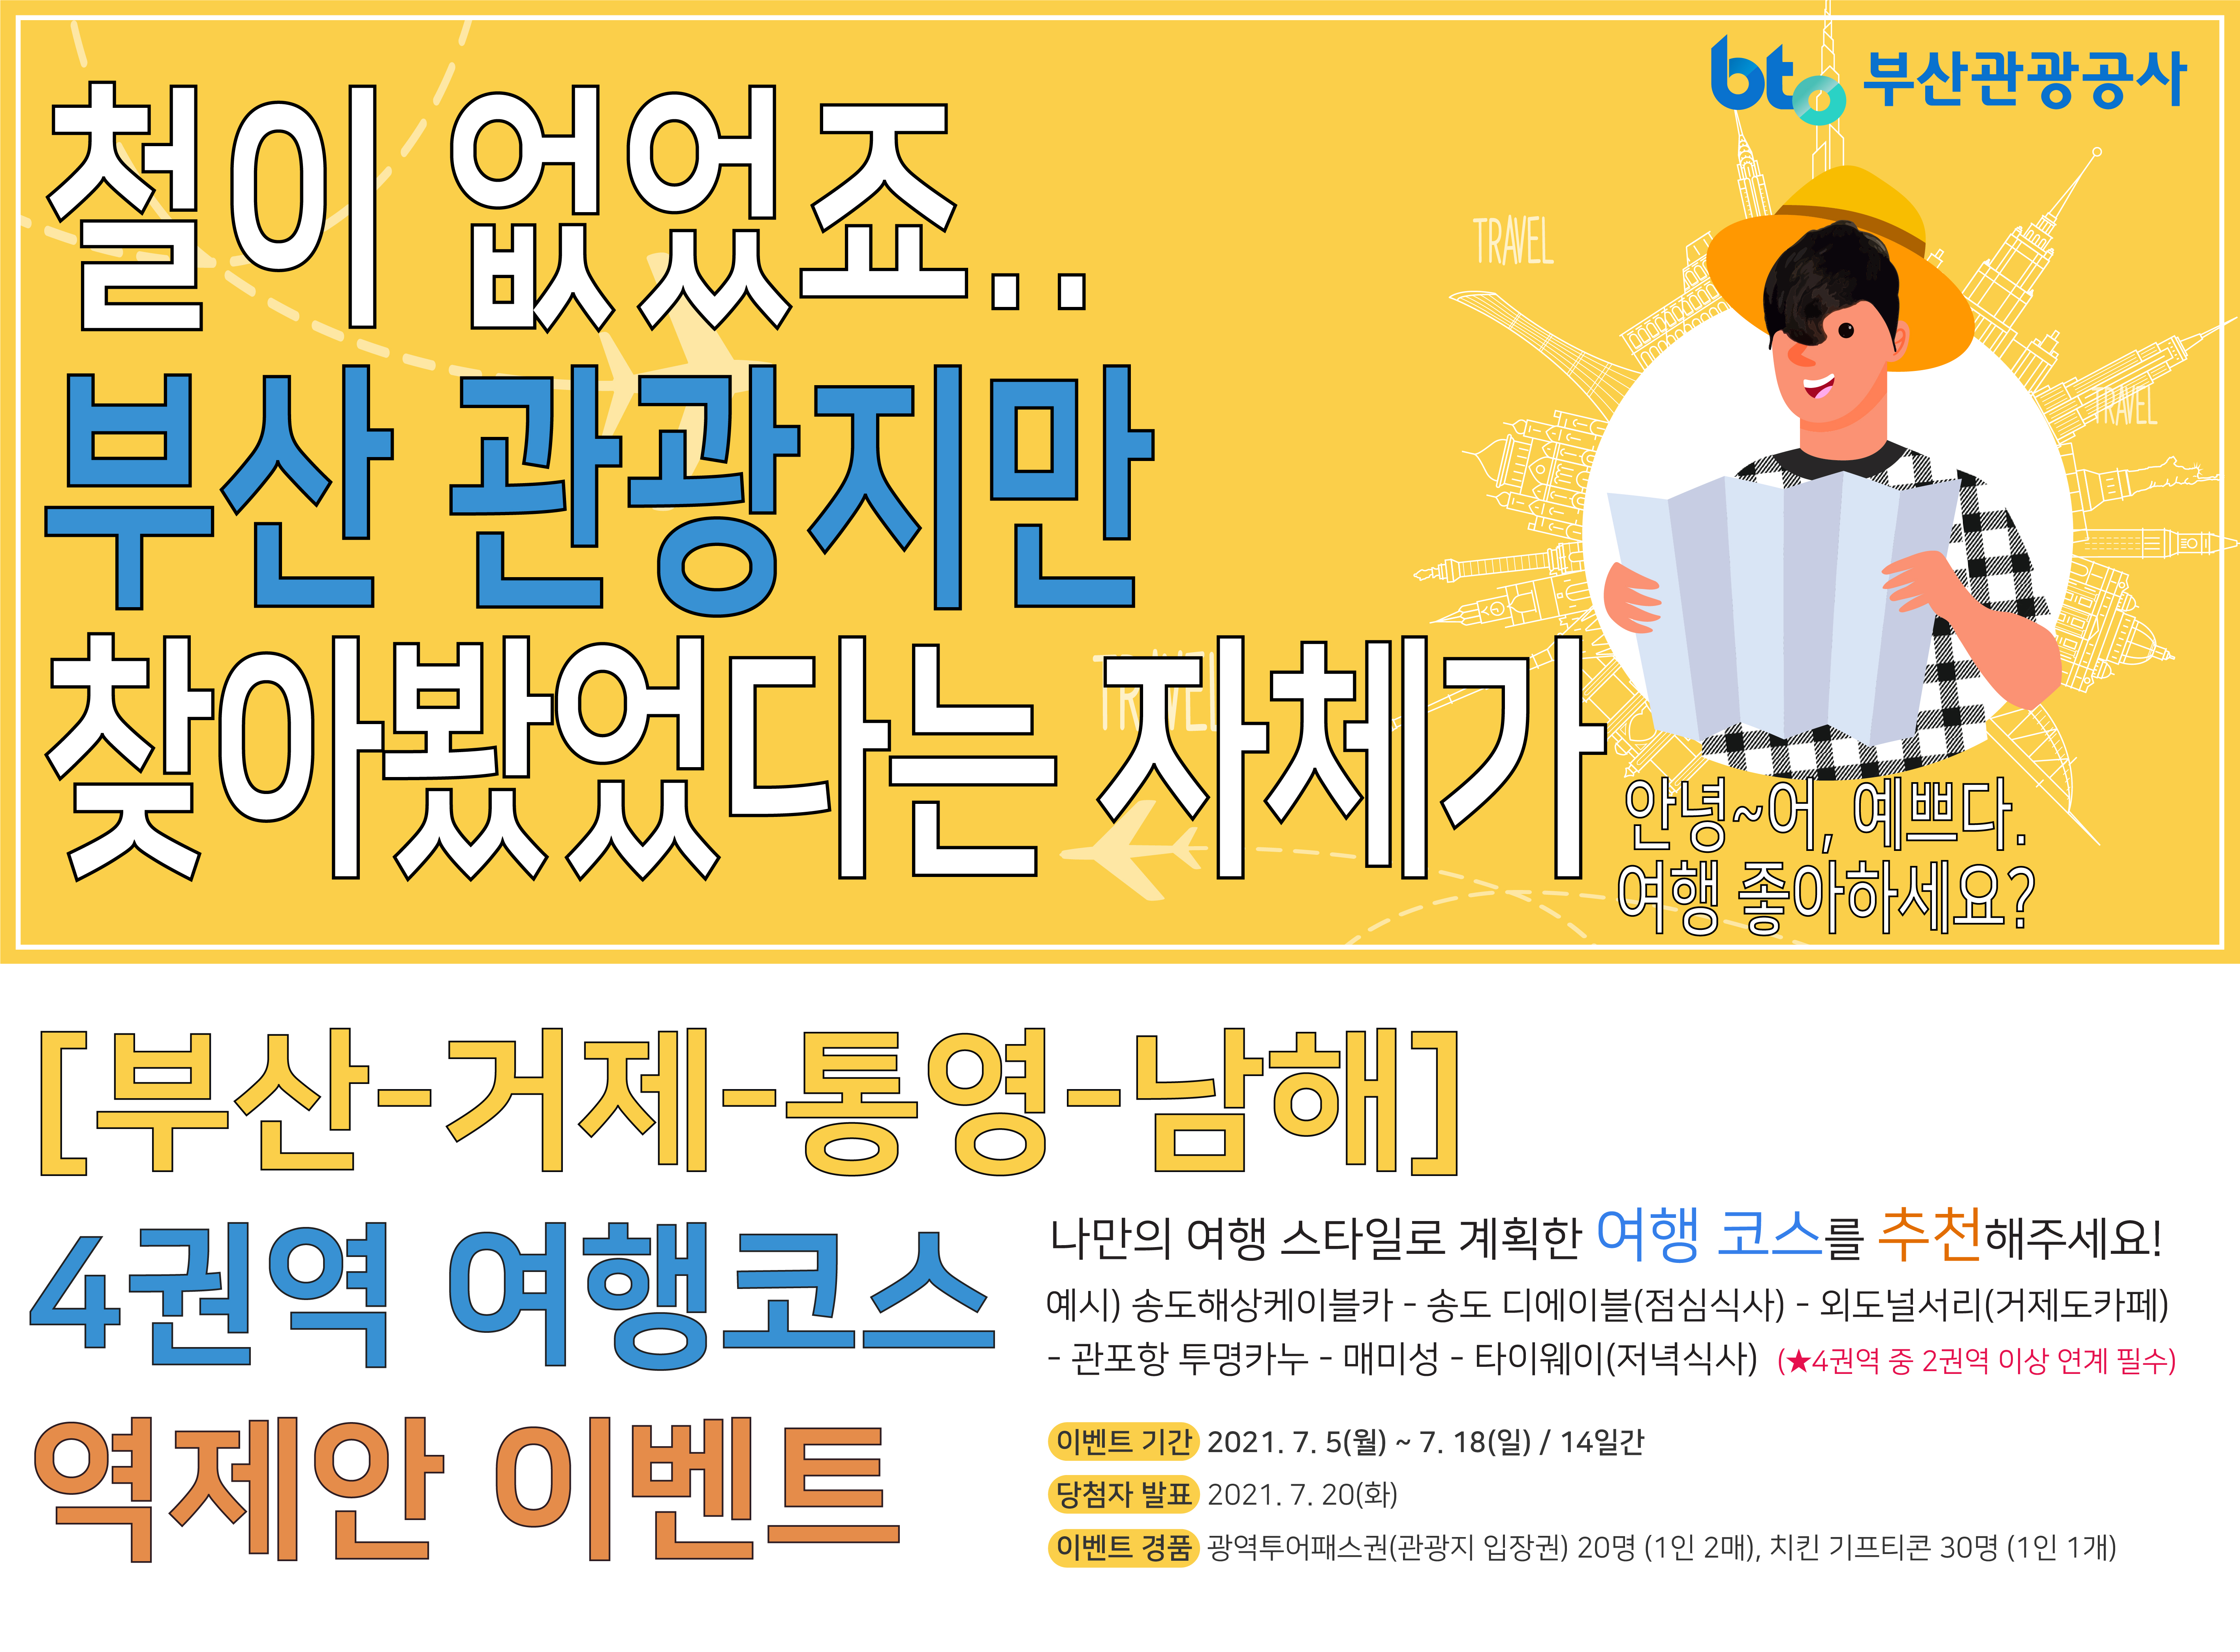 부산-거제-통영-남해 4권역 여행코스 역제안 이벤트 